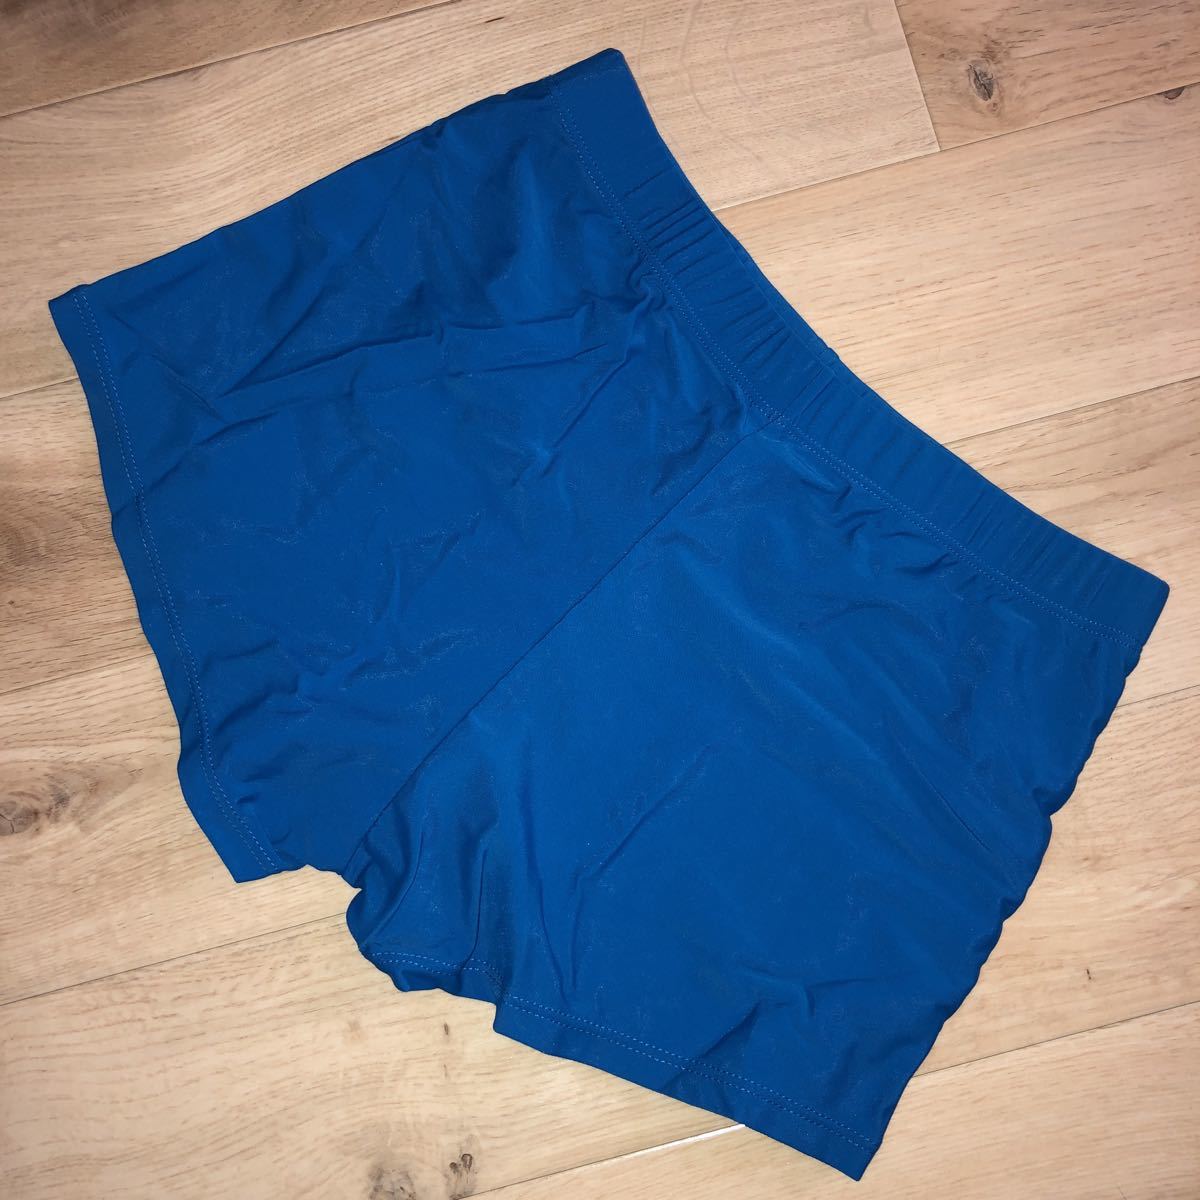 メンズ 海水パンツ ビキニ パンツ S 新品 ブルー 青 水着の画像2